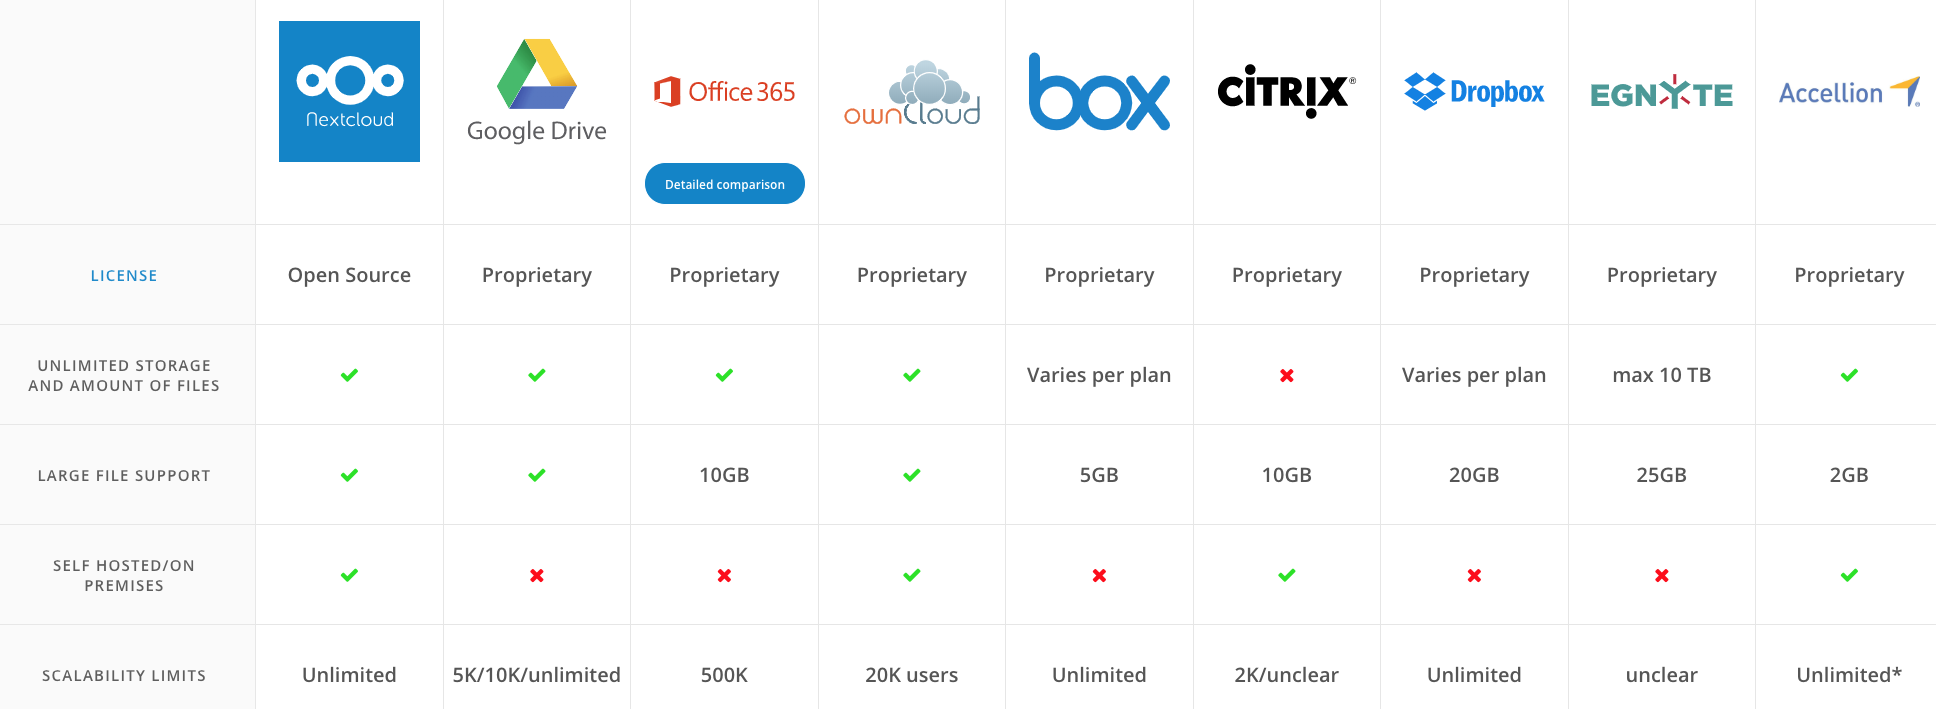 Nextcloud comparison to other cloud apps